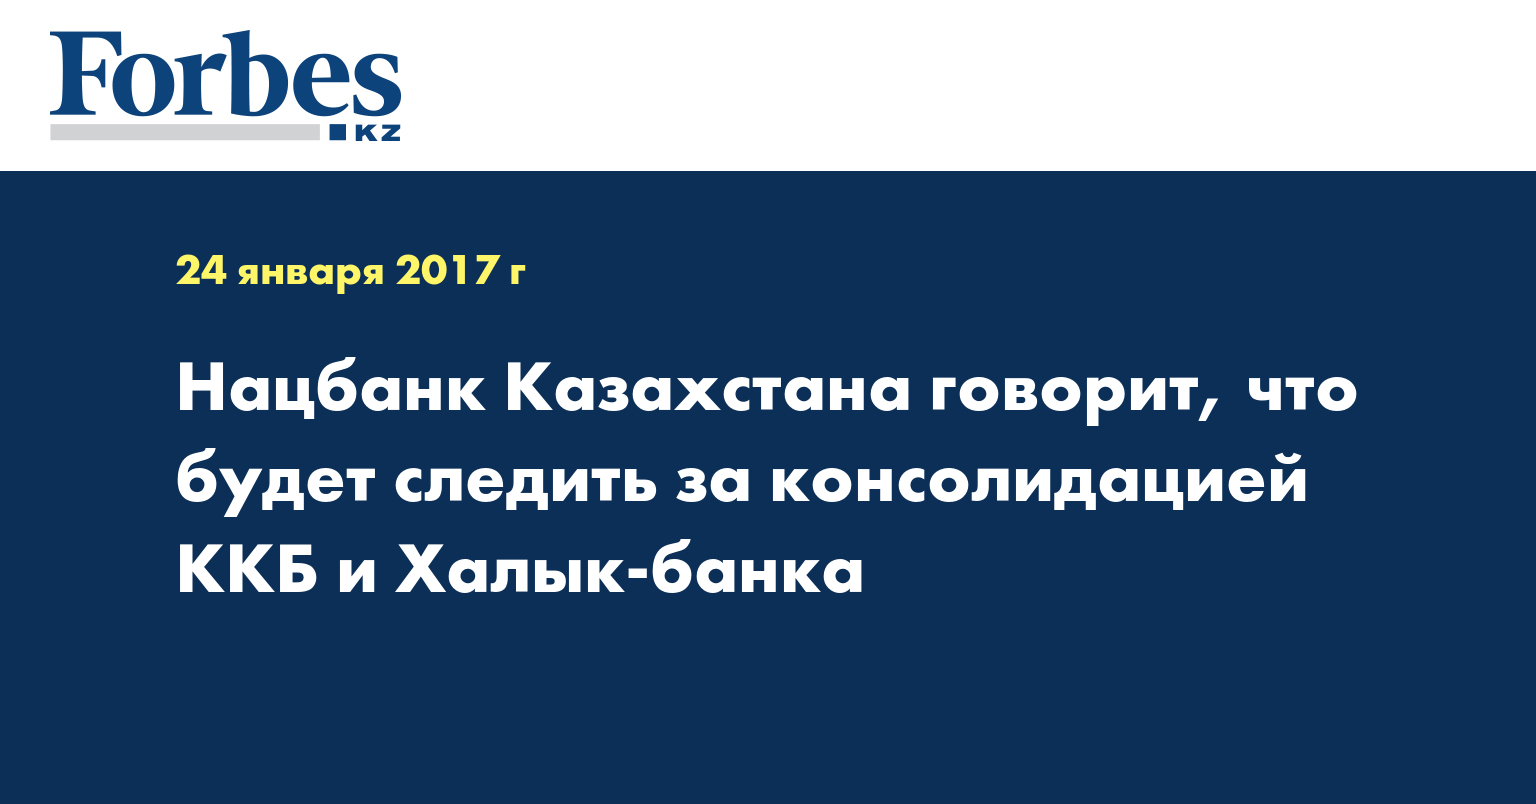 Нацбанк Казахстана говорит, что будет следить за консолидацией ККБ и Халык-банка